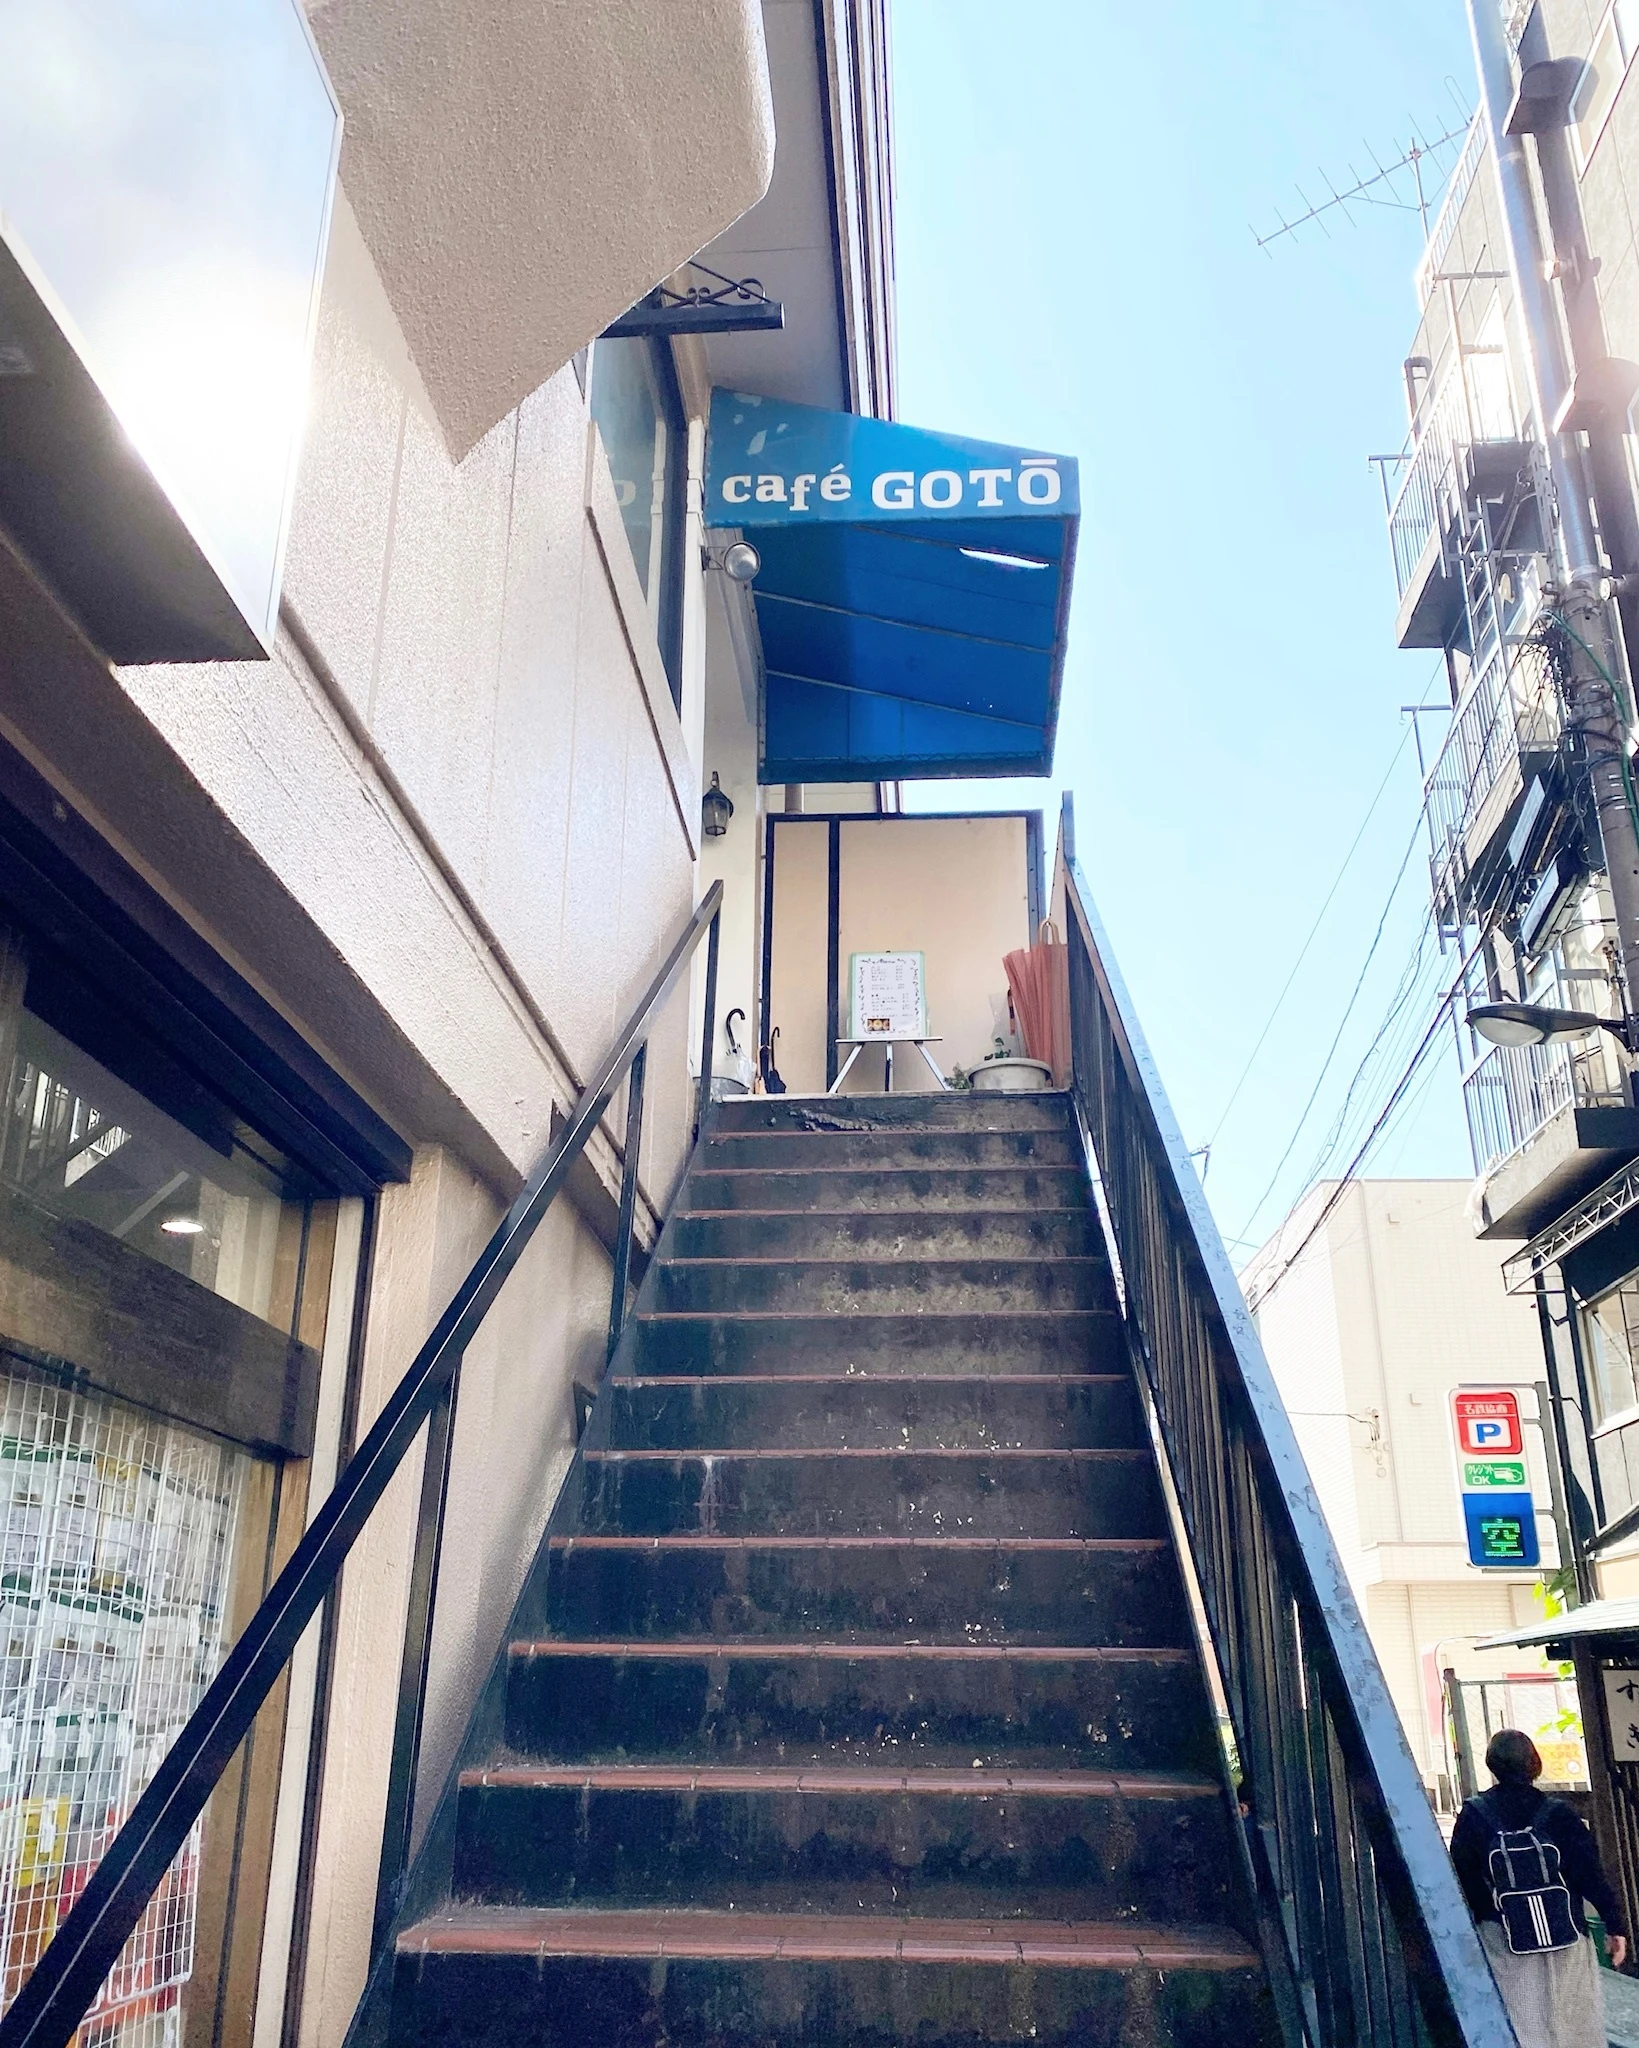 早稲田駅から徒歩2分のところにある喫茶店「cafe GOTO」の外観。
店舗のある二階へ伸びる階段がある。店の入り口部分には、青い屋根がついており、「cafe GOTO」という白い文字が入っている。